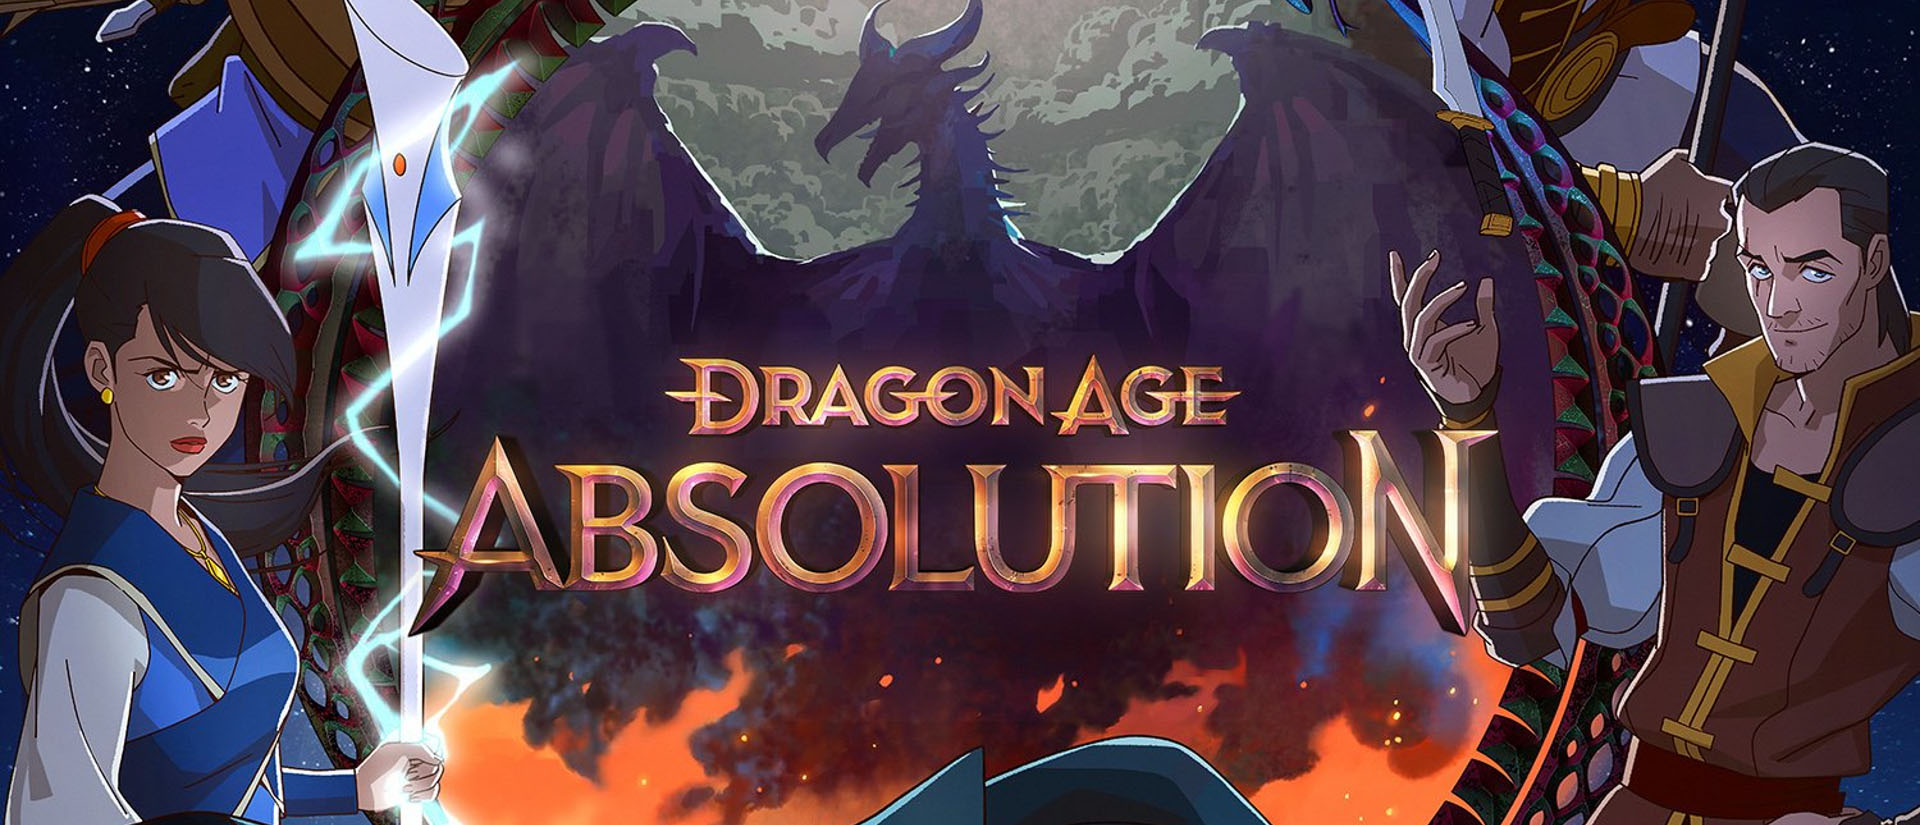 ›Dragon Age: Absolution‹ erscheint